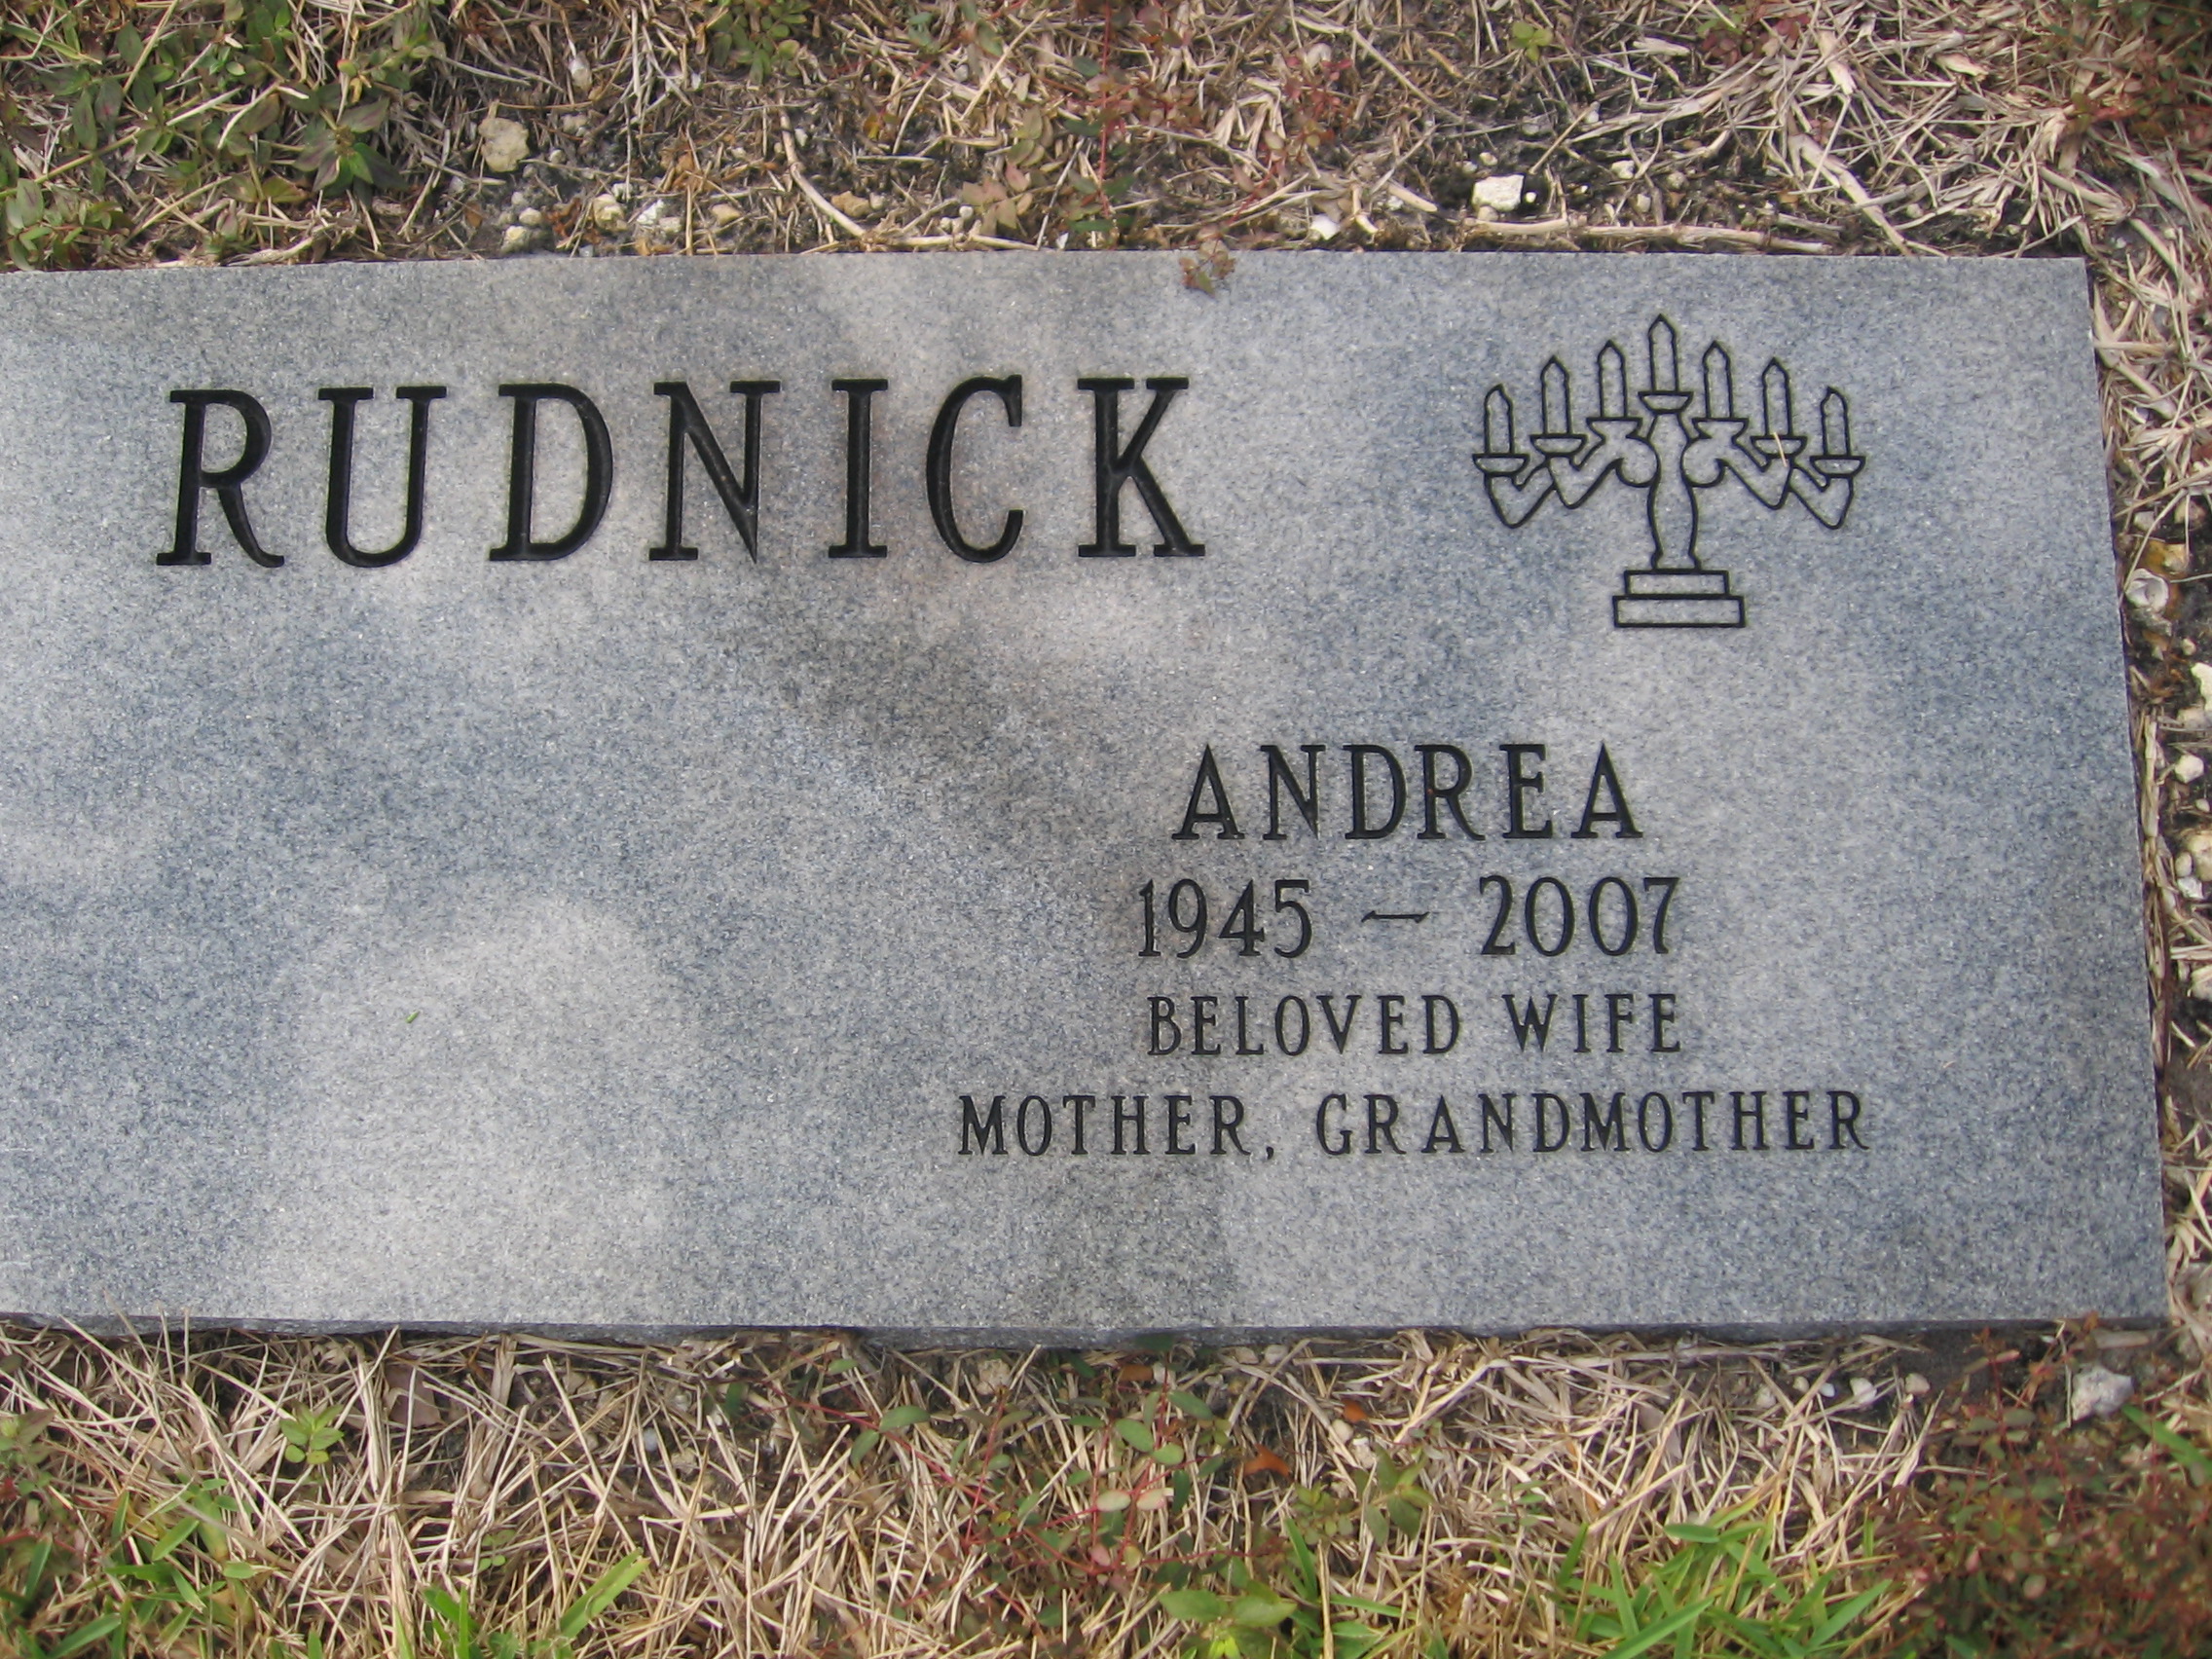 Andrea Rudnick